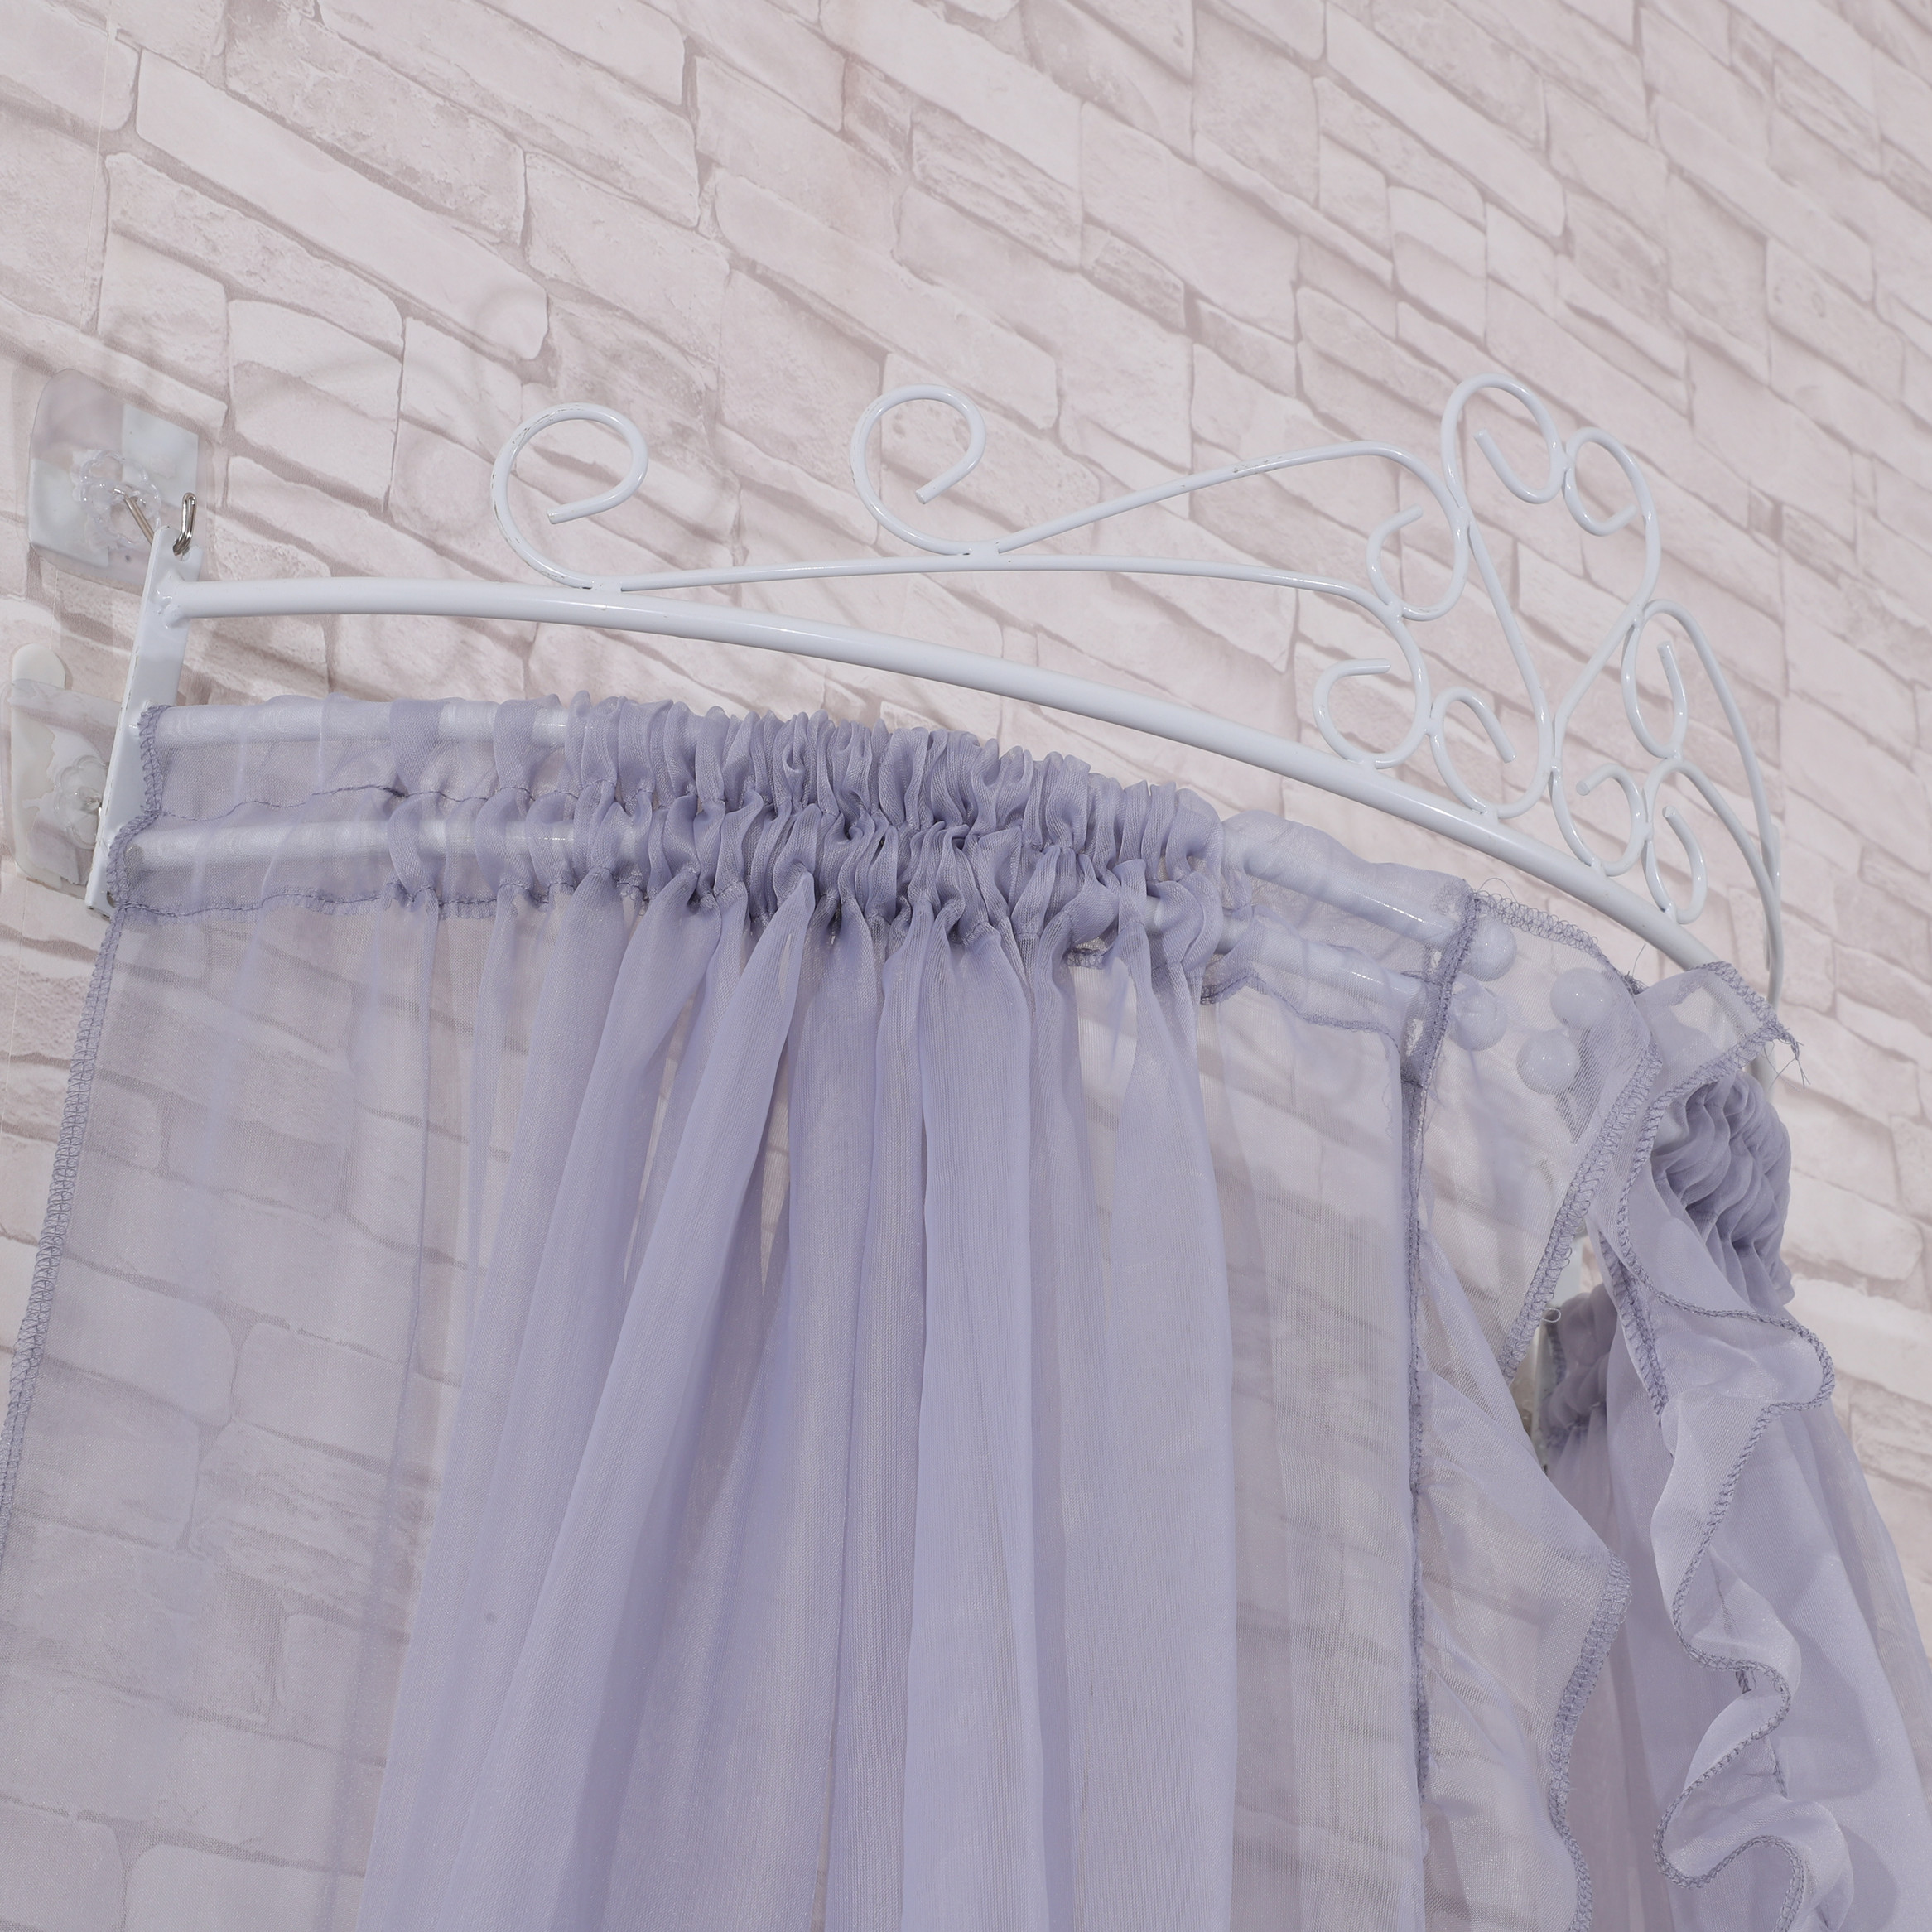 Neueste Design Crown Top Nachttische Elegante Moskitonetze Vorhang